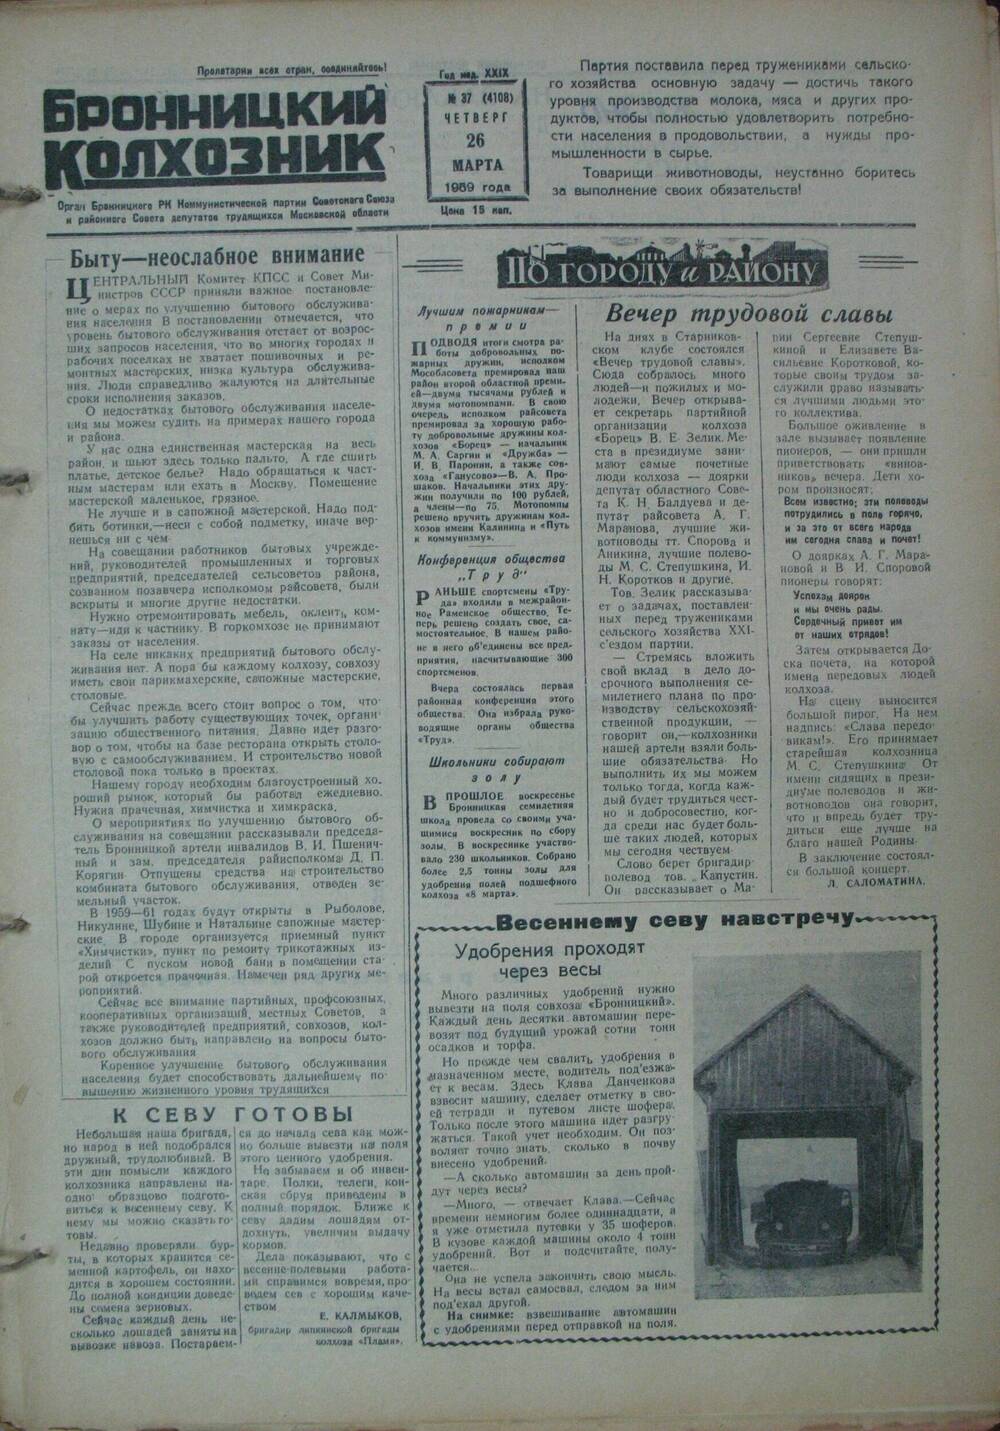 Бронницкий колхозник,  газета № 37 от 26 марта 1959г